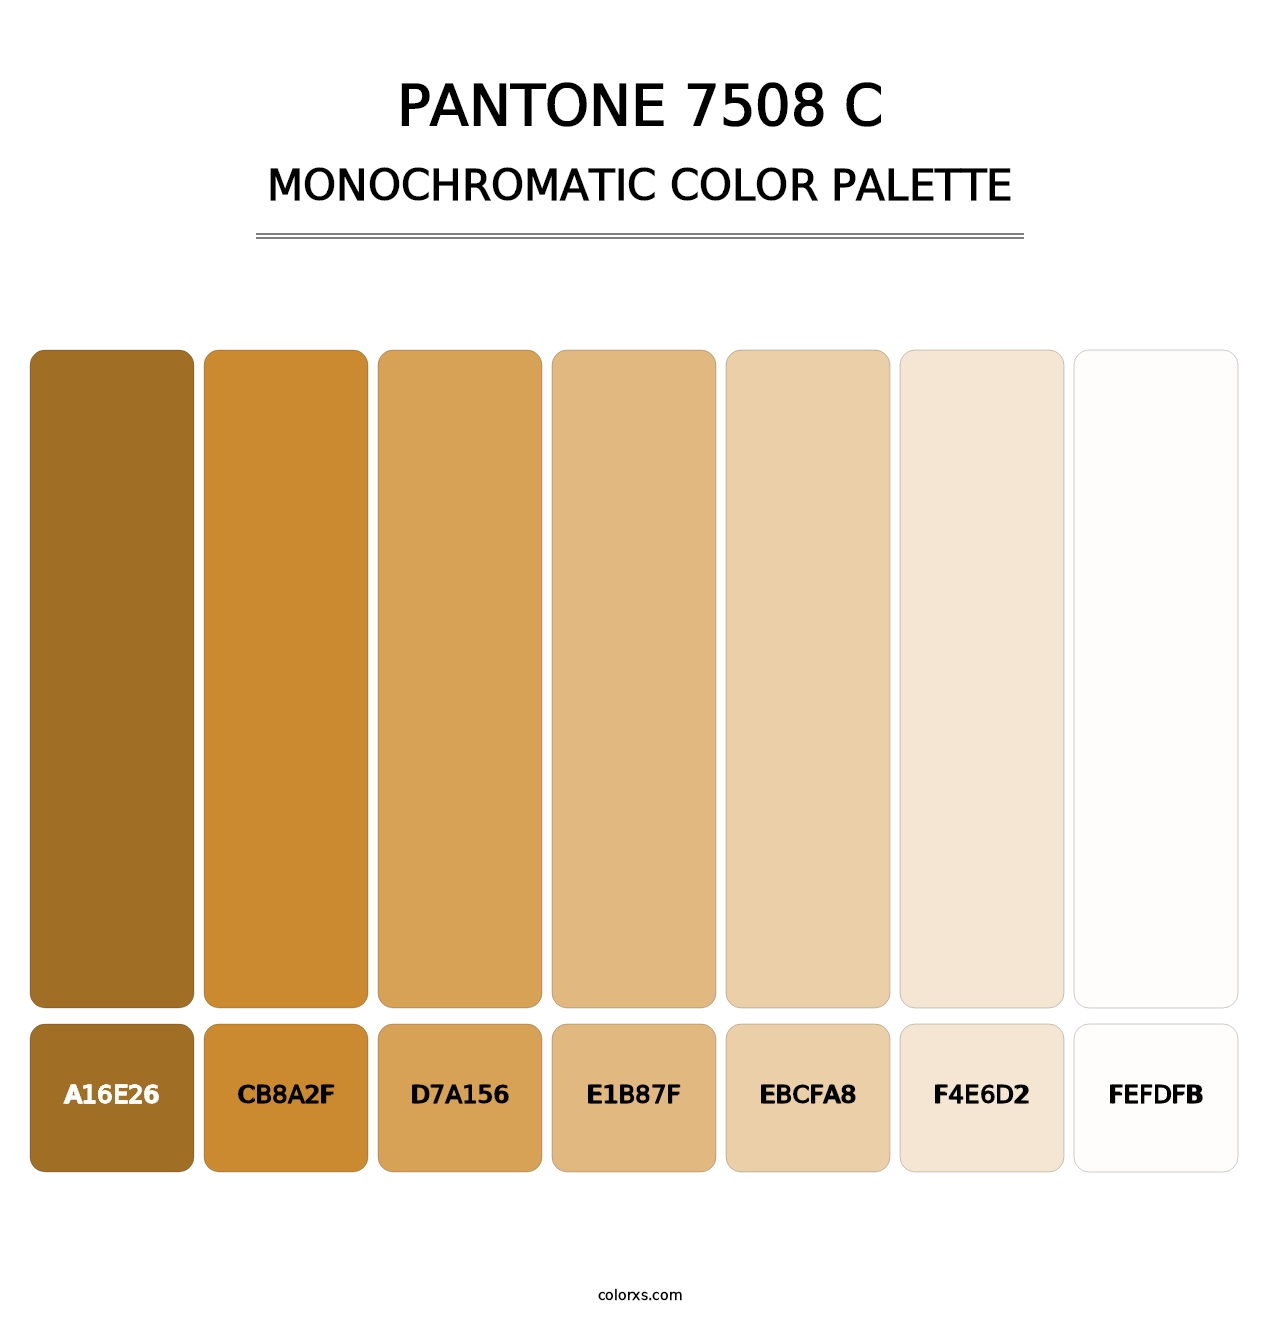 PANTONE 7508 C - Monochromatic Color Palette